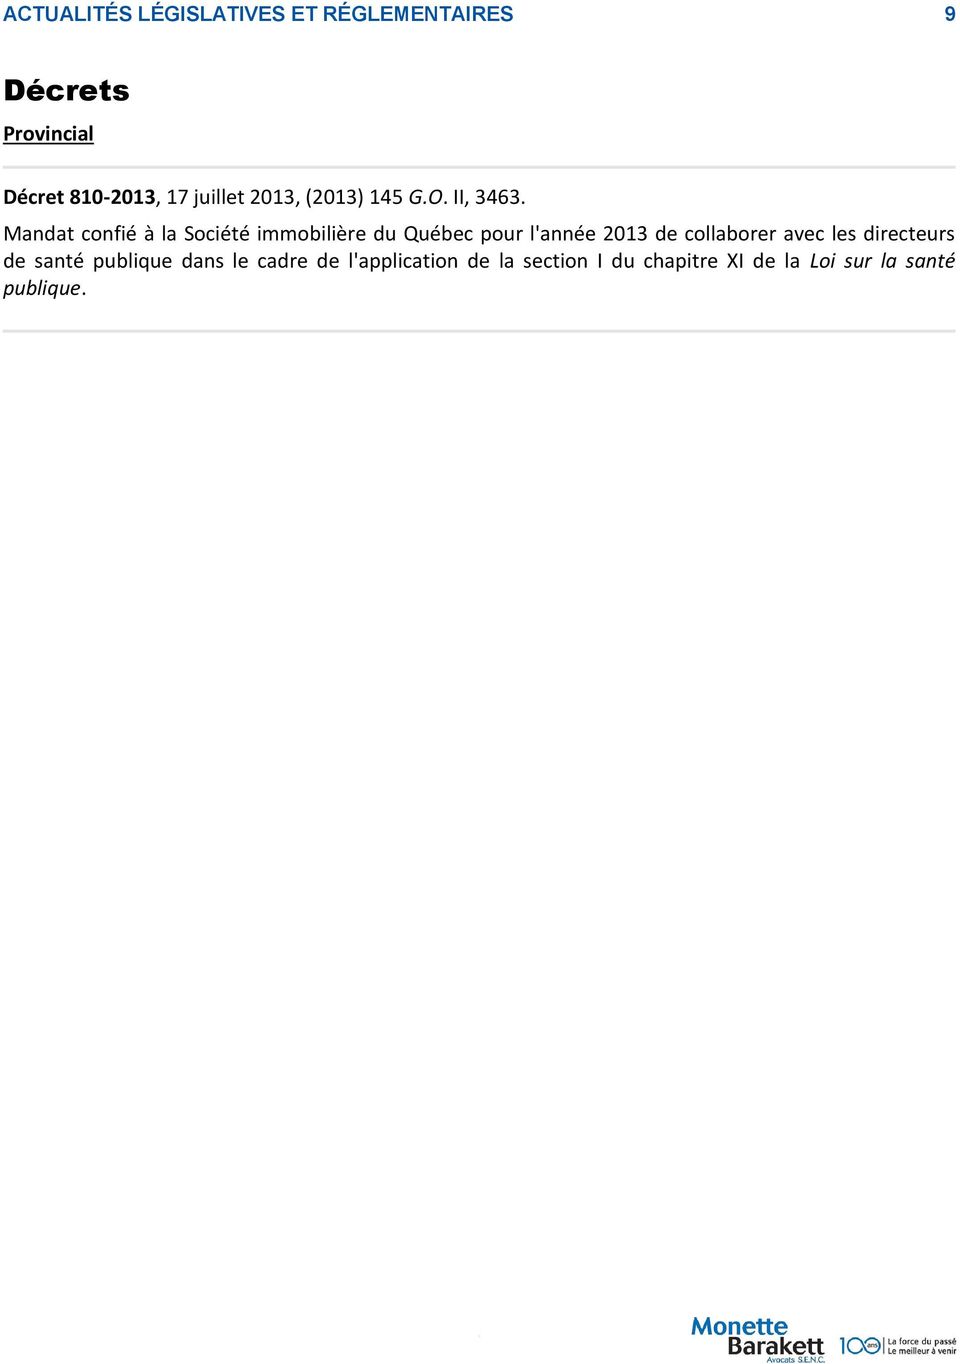 Mandat confié à la Société immobilière du Québec pour l'année 2013 de collaborer